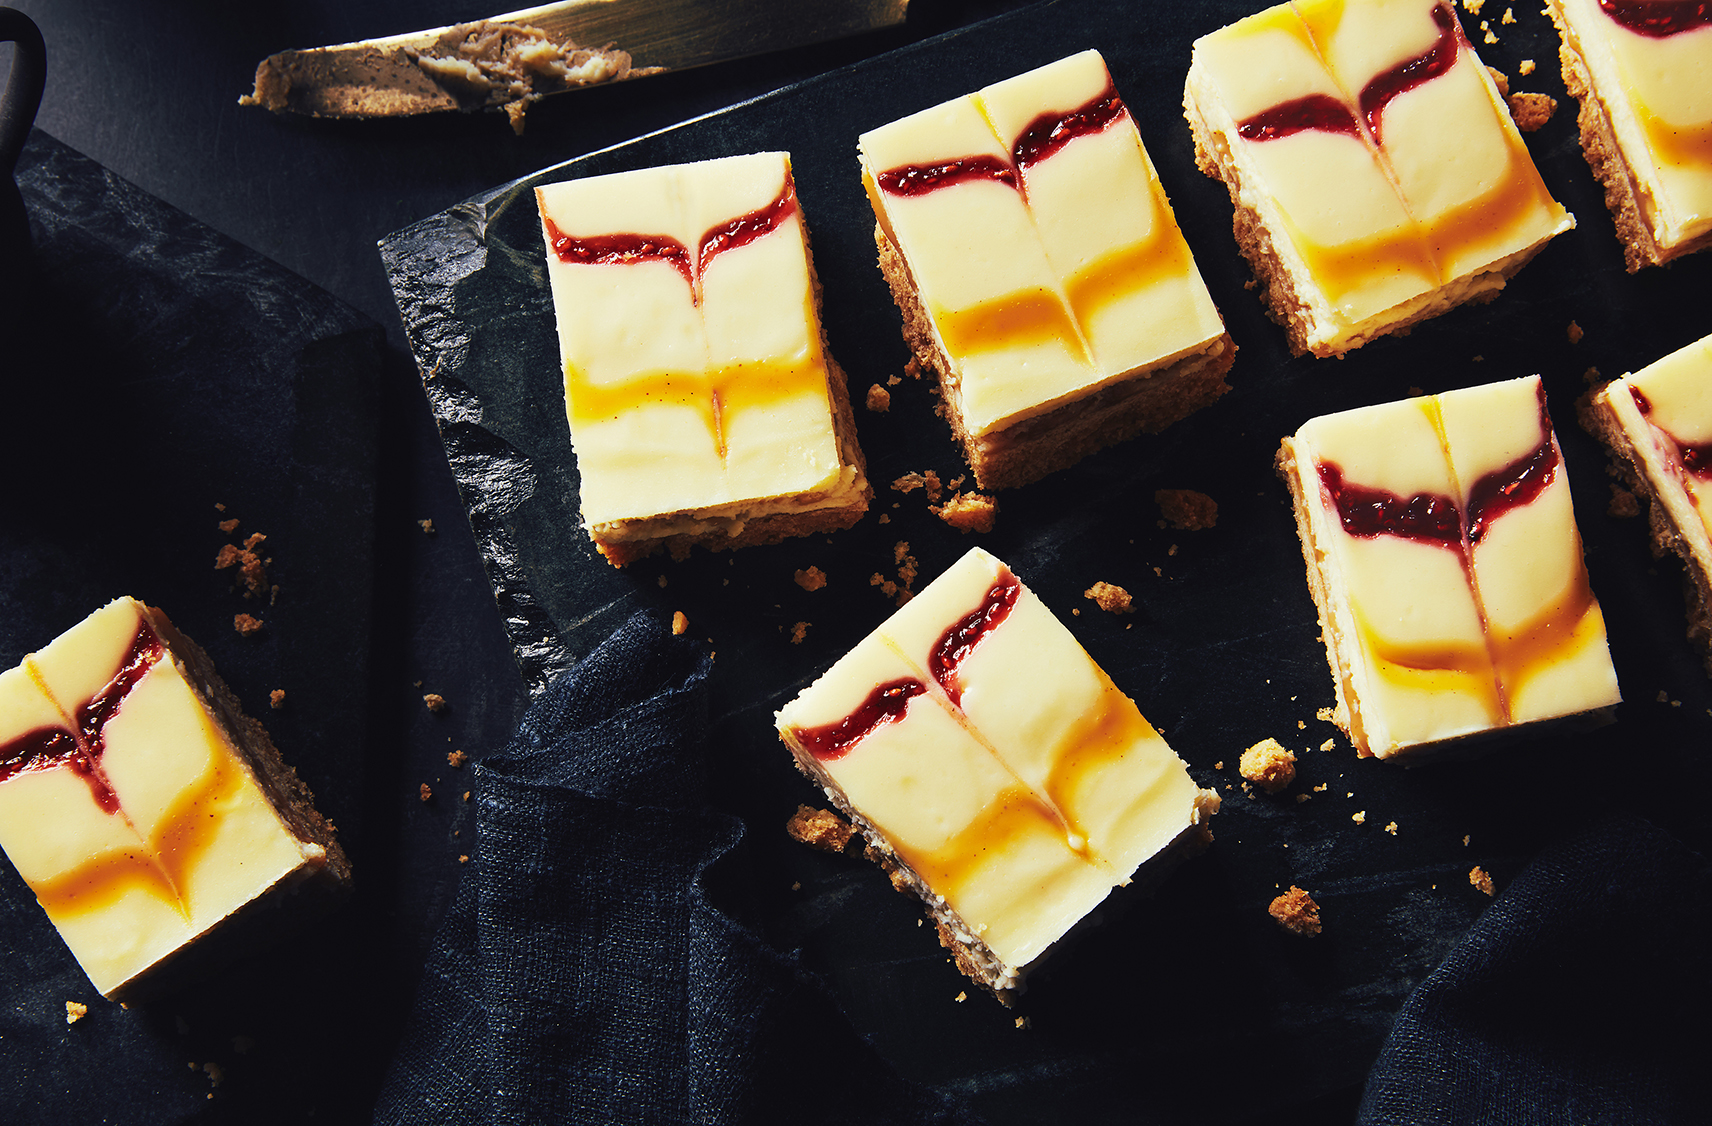 Des carrés de gâteau au fromage au chocolat blond et aux framboises placés sur une ardoise noire pour la présentation